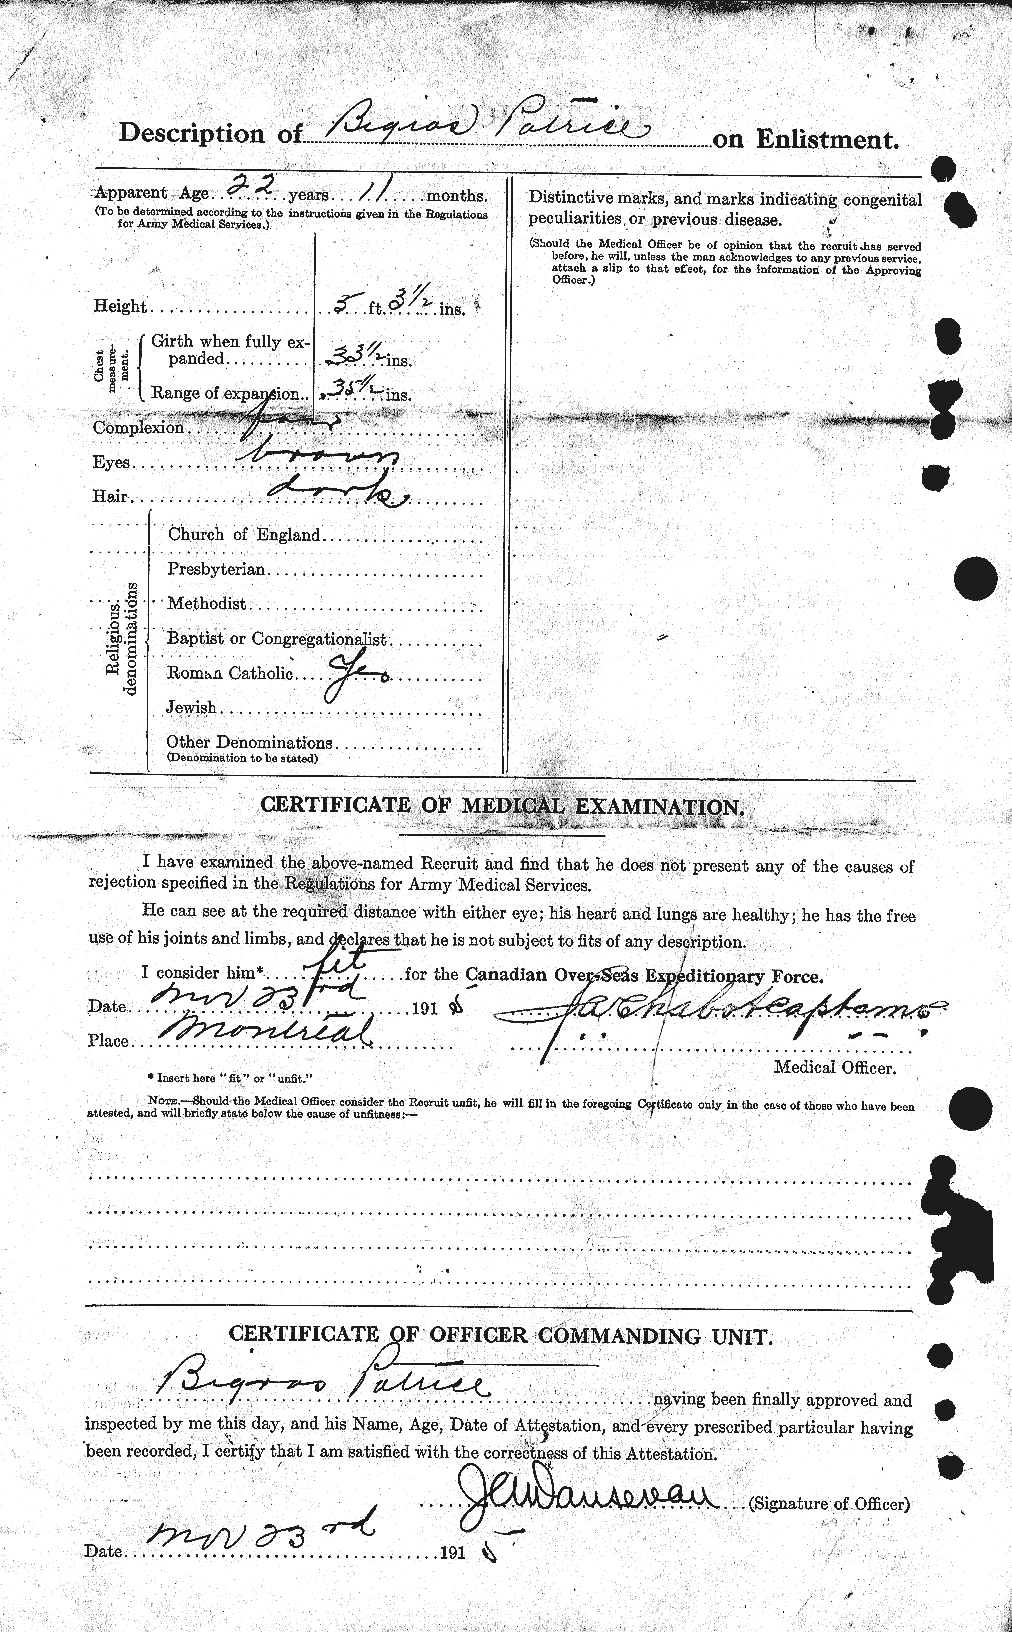 Dossiers du Personnel de la Première Guerre mondiale - CEC 239053b